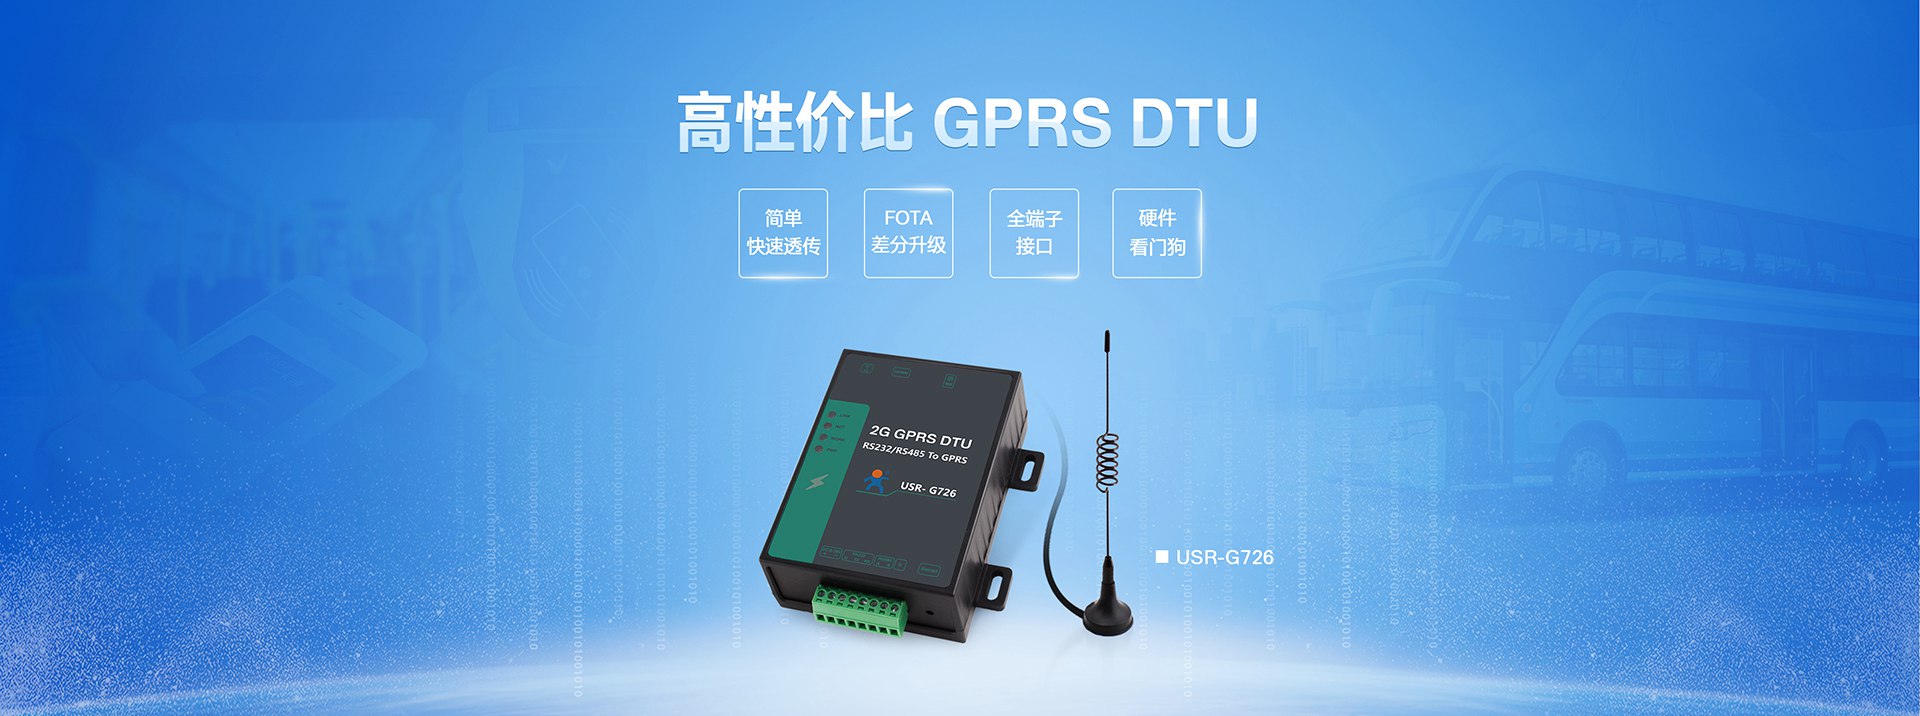 高性价比GPRS DTU|2G数据传输终端|全端子透传终端设备FOTA差分升级